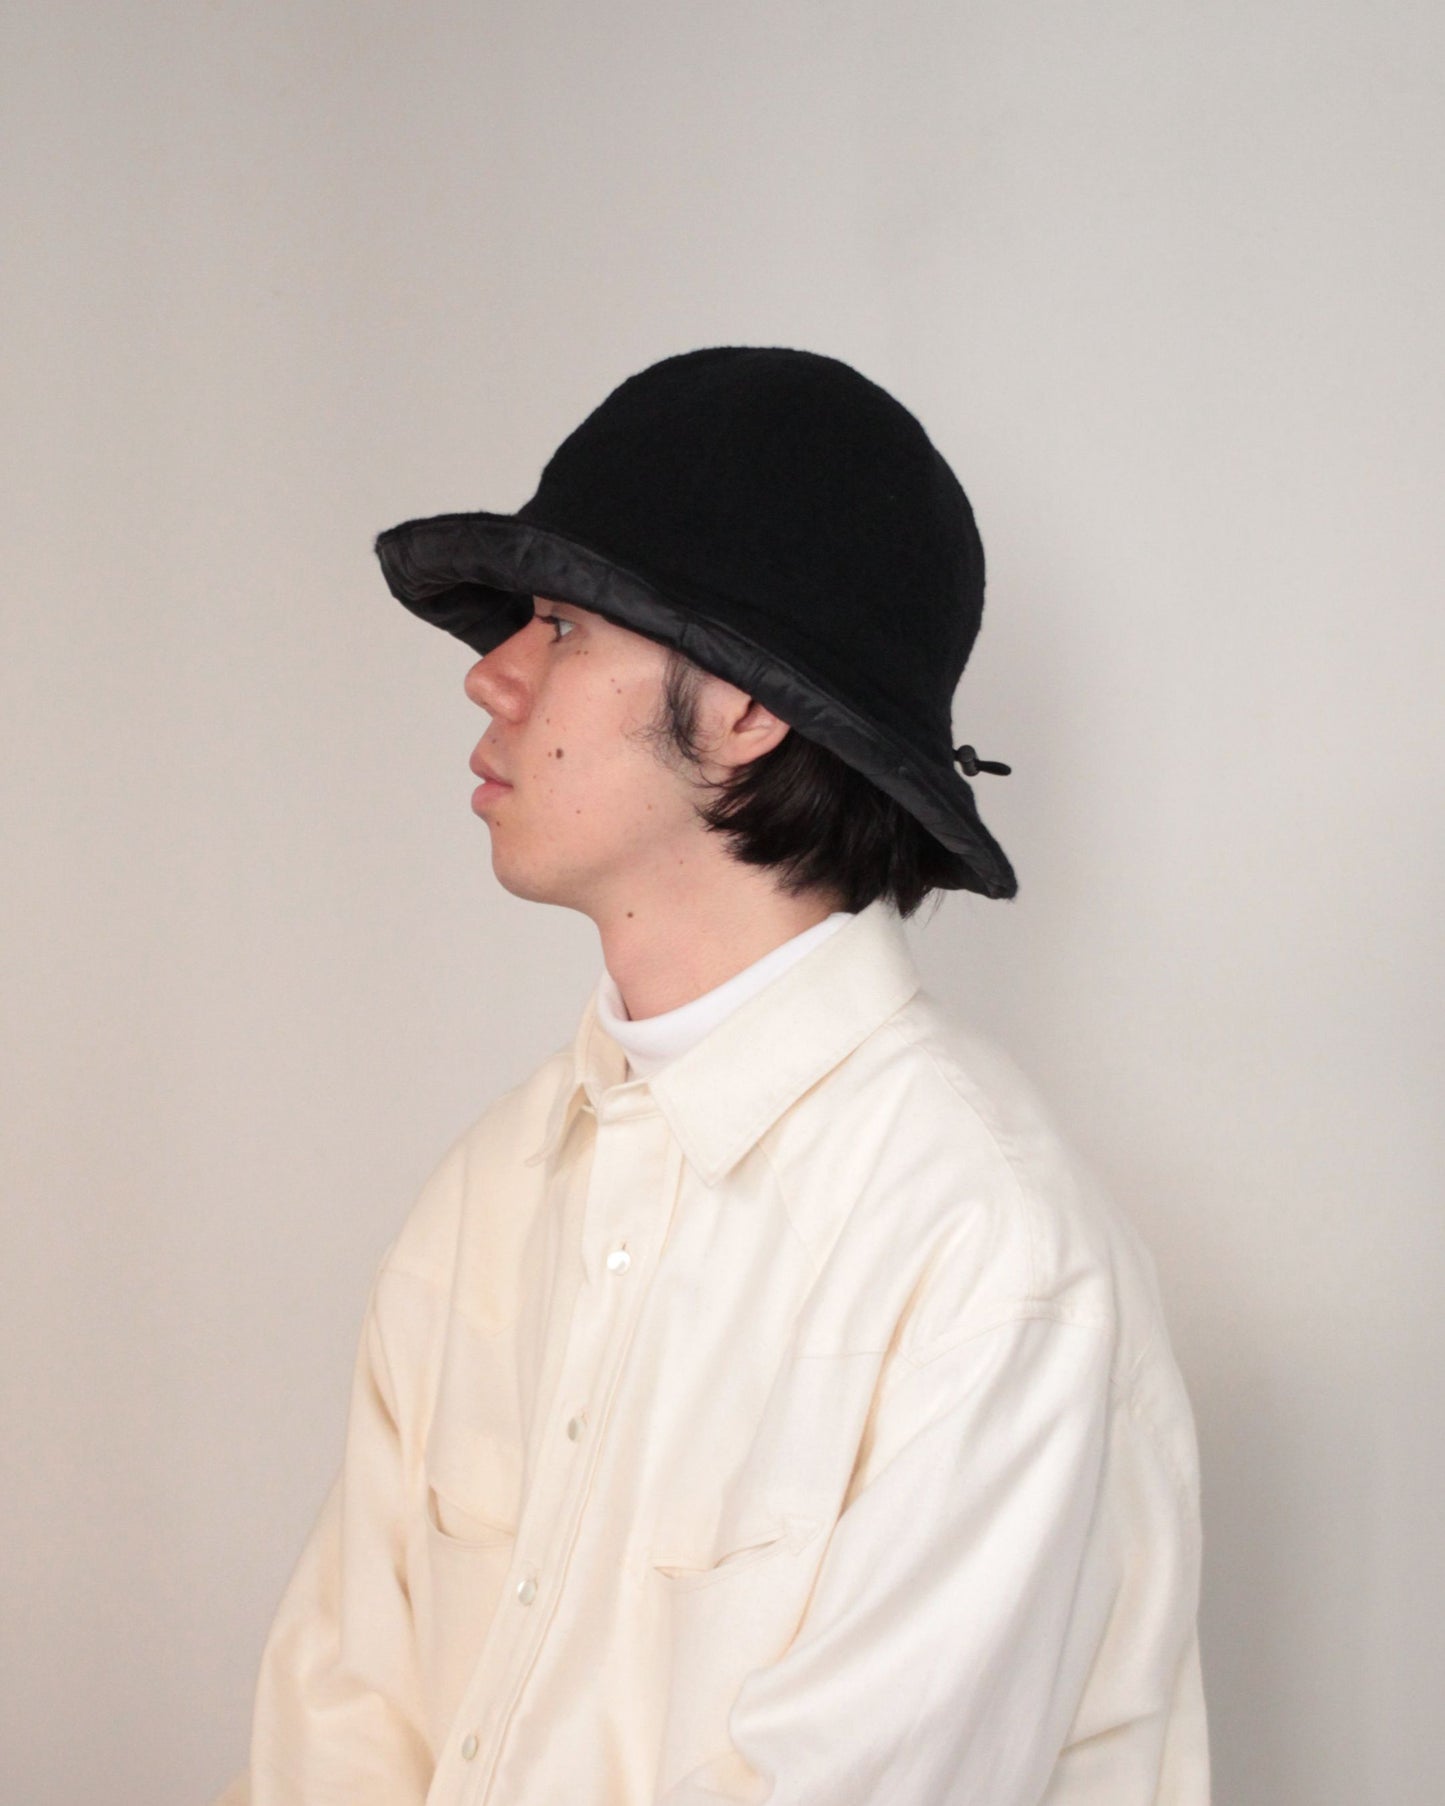 kijimatakayuki / BOILED WOOL 6PANEL HAT "BLACK"